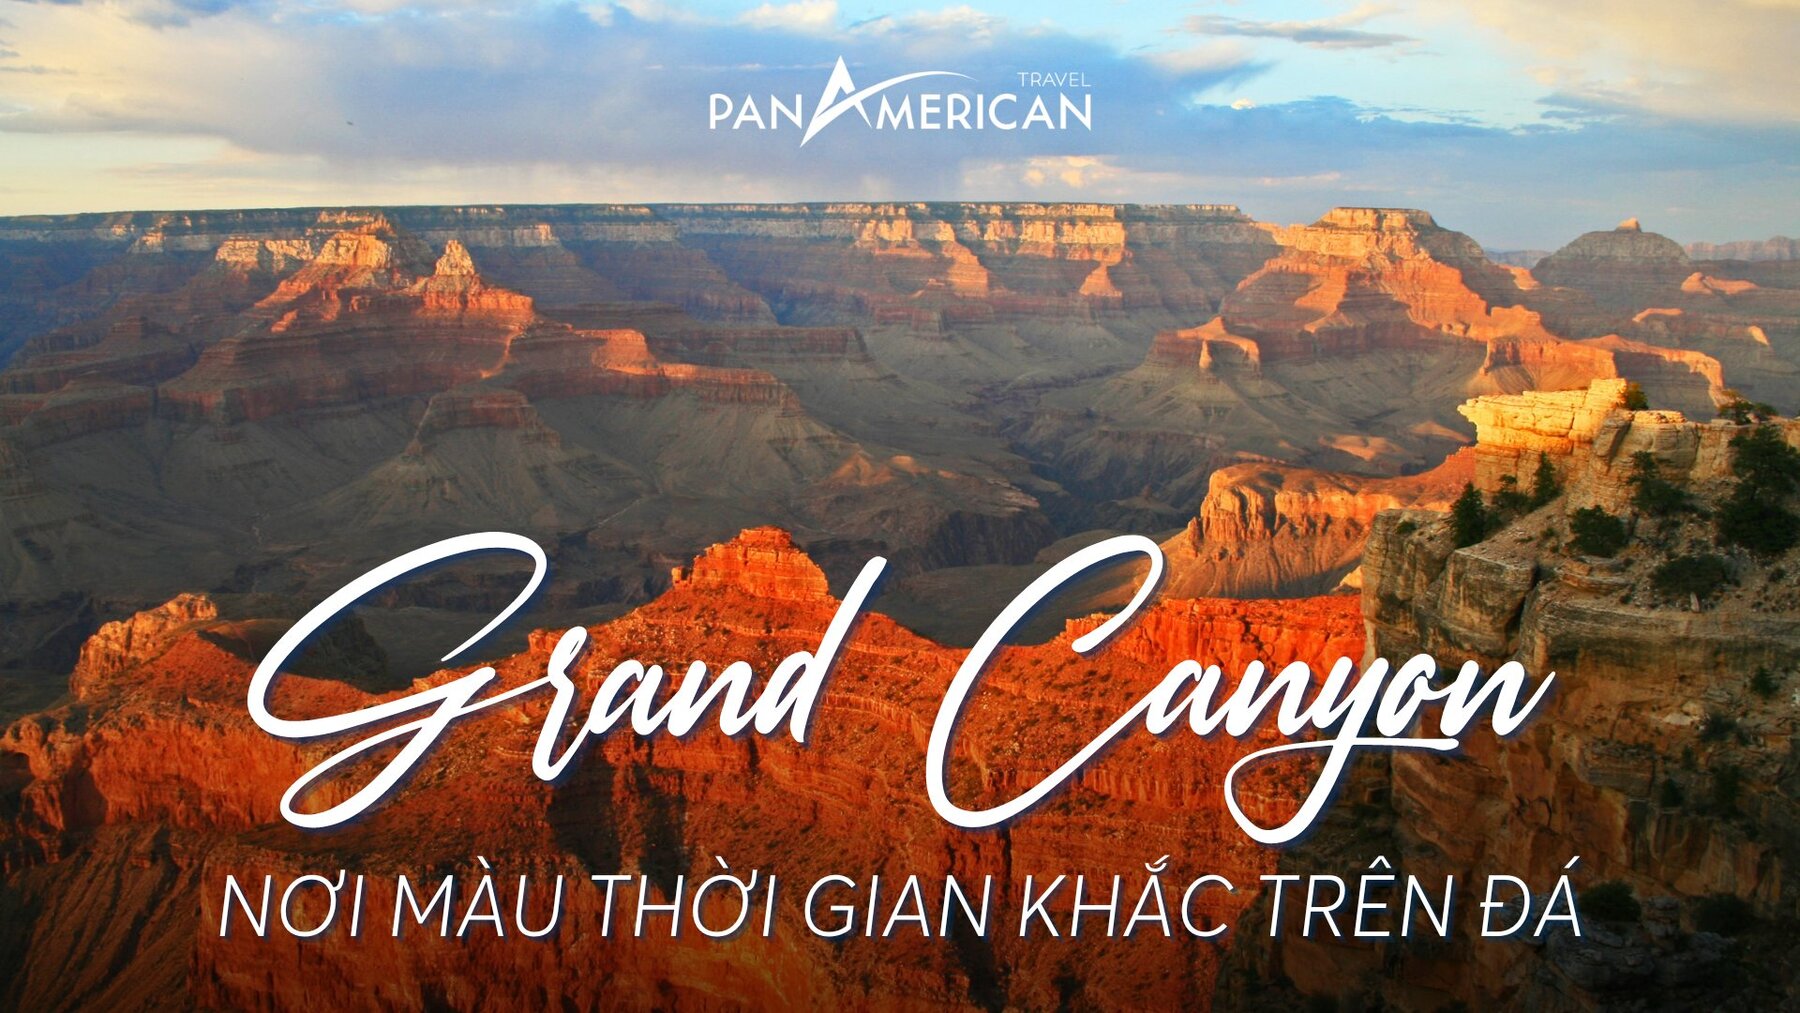 Grand Canyon - Hành trình màu thời gian khắc trên đá